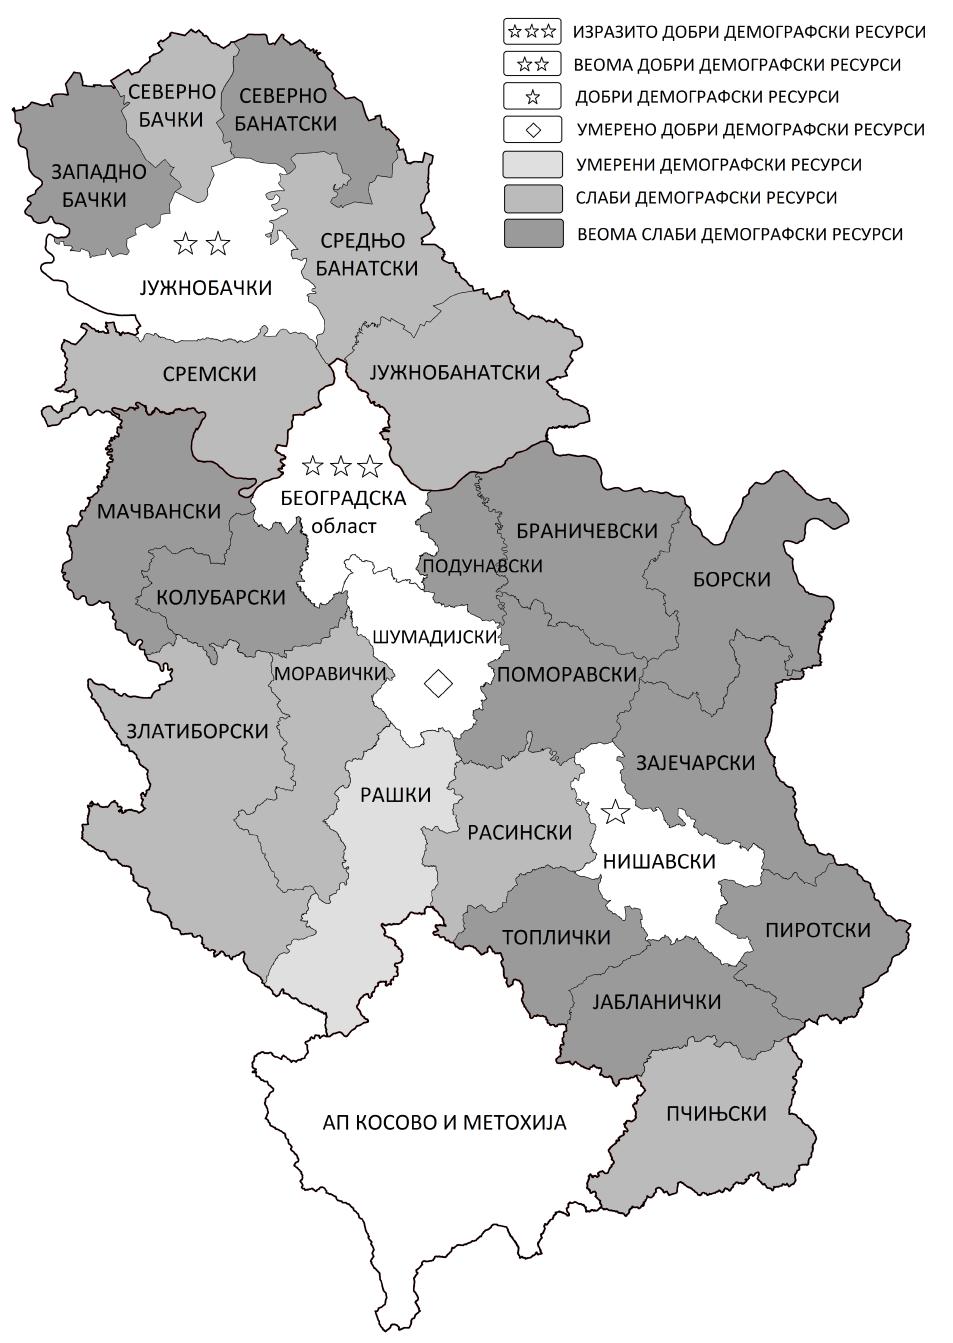 891 ближно 30% већа од оне која јој одговара у Шумадијском округу. Такође, у поређењу са Рашком, оба округа бележе лошије демографске одлике, али релативно већи образовни потенцијал. Слика 8.